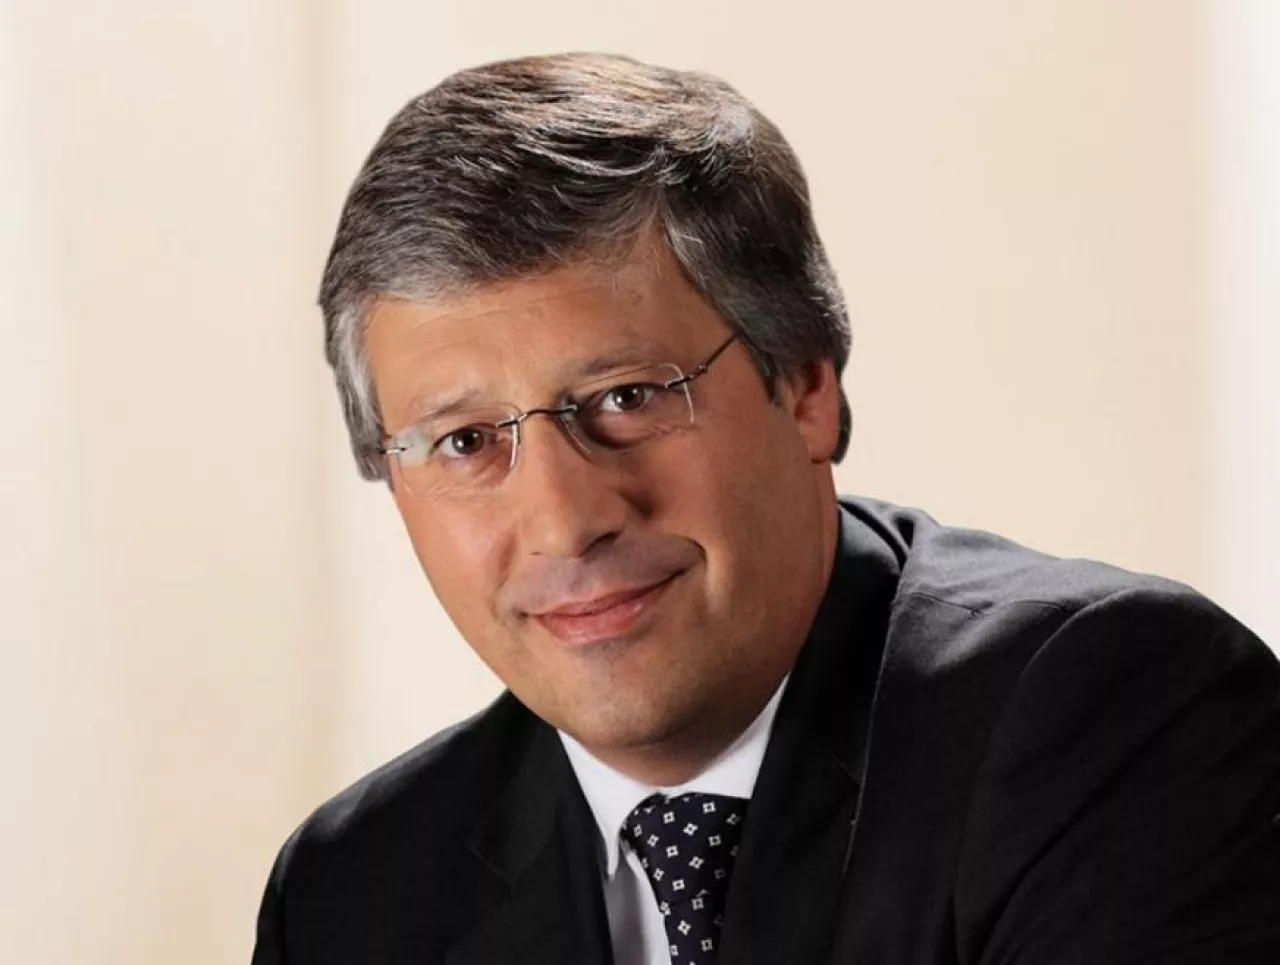 Pedro Pereira da Silva, prezes rosyjskiej sieci Dixi, dawniej szef Biedronki (materiały prasowe)